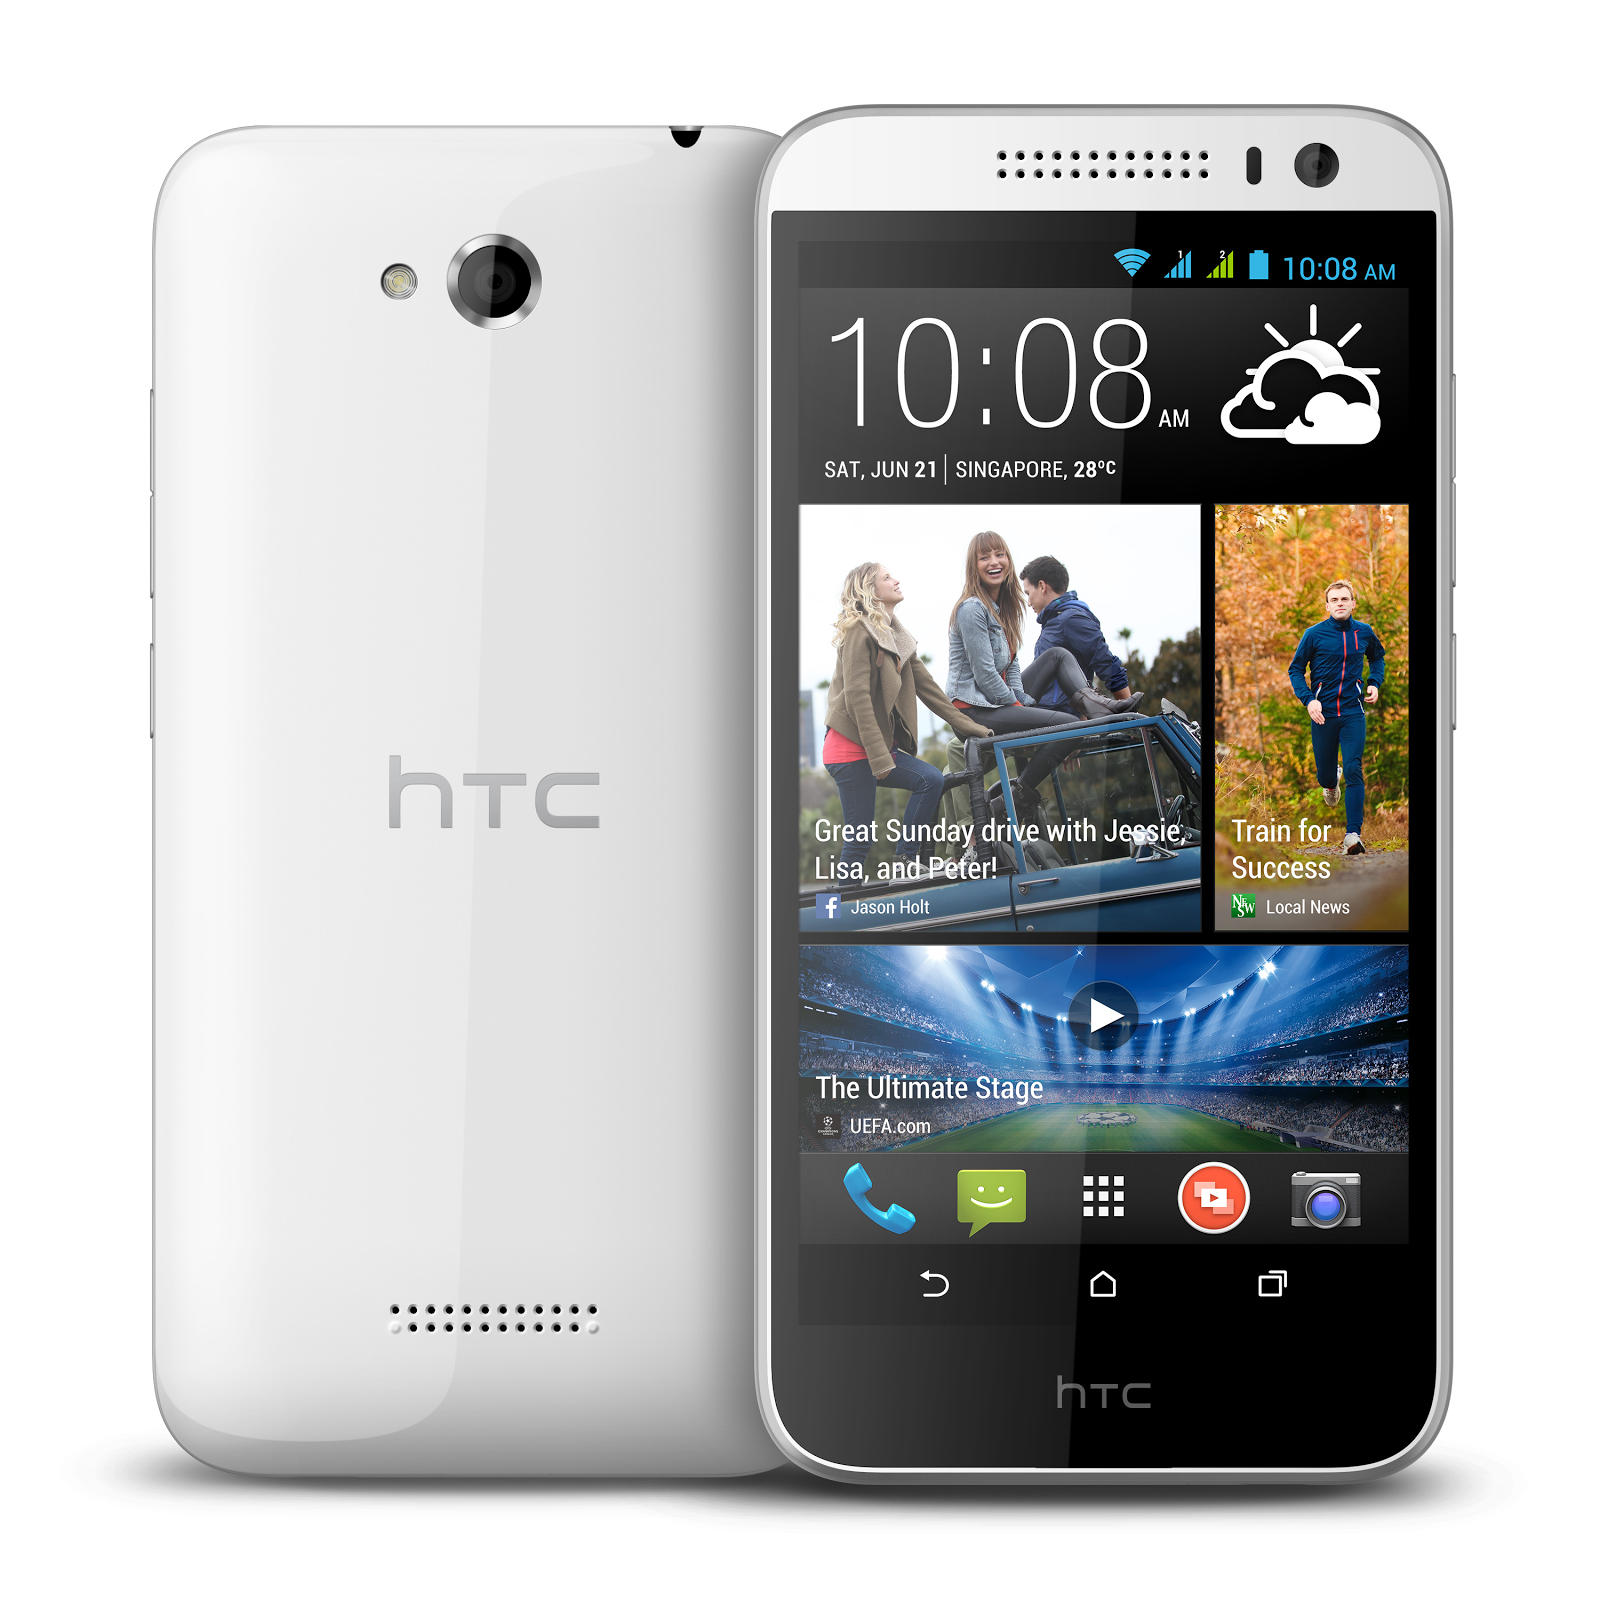 HTC Desire 616 with 5-inch display, octa-core processor, 8MP camera